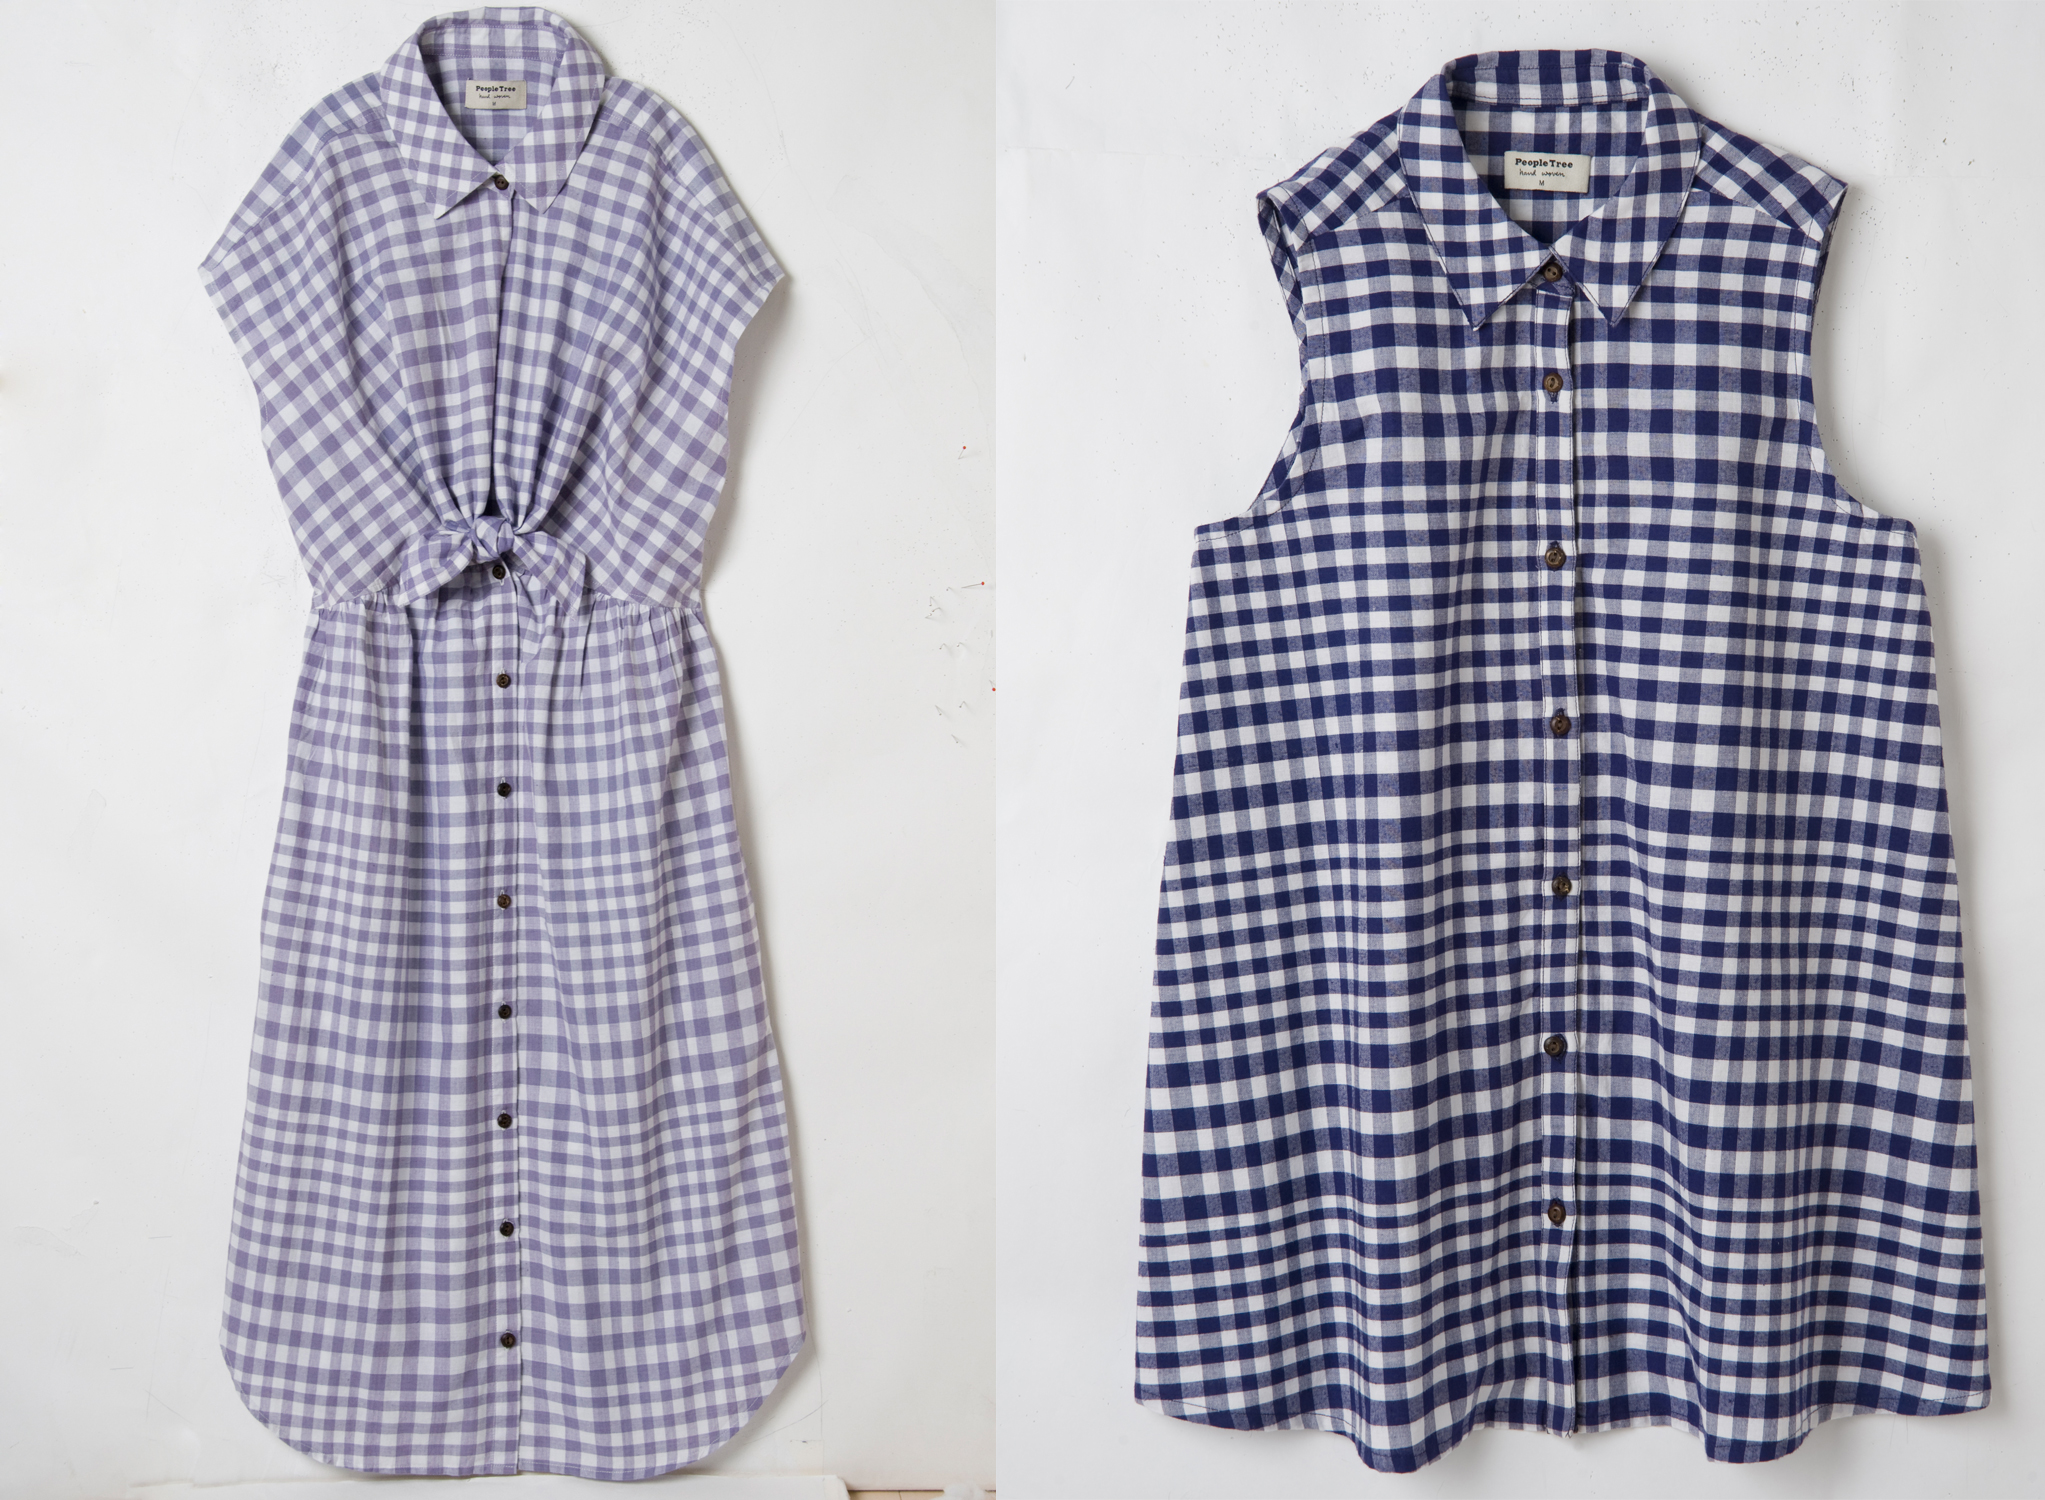 （左）リボンシャツドレス 12,000円（税抜）、（右）ギンガム・フレアシャツ 8,900円（税抜）ともに4月中旬より発売予定